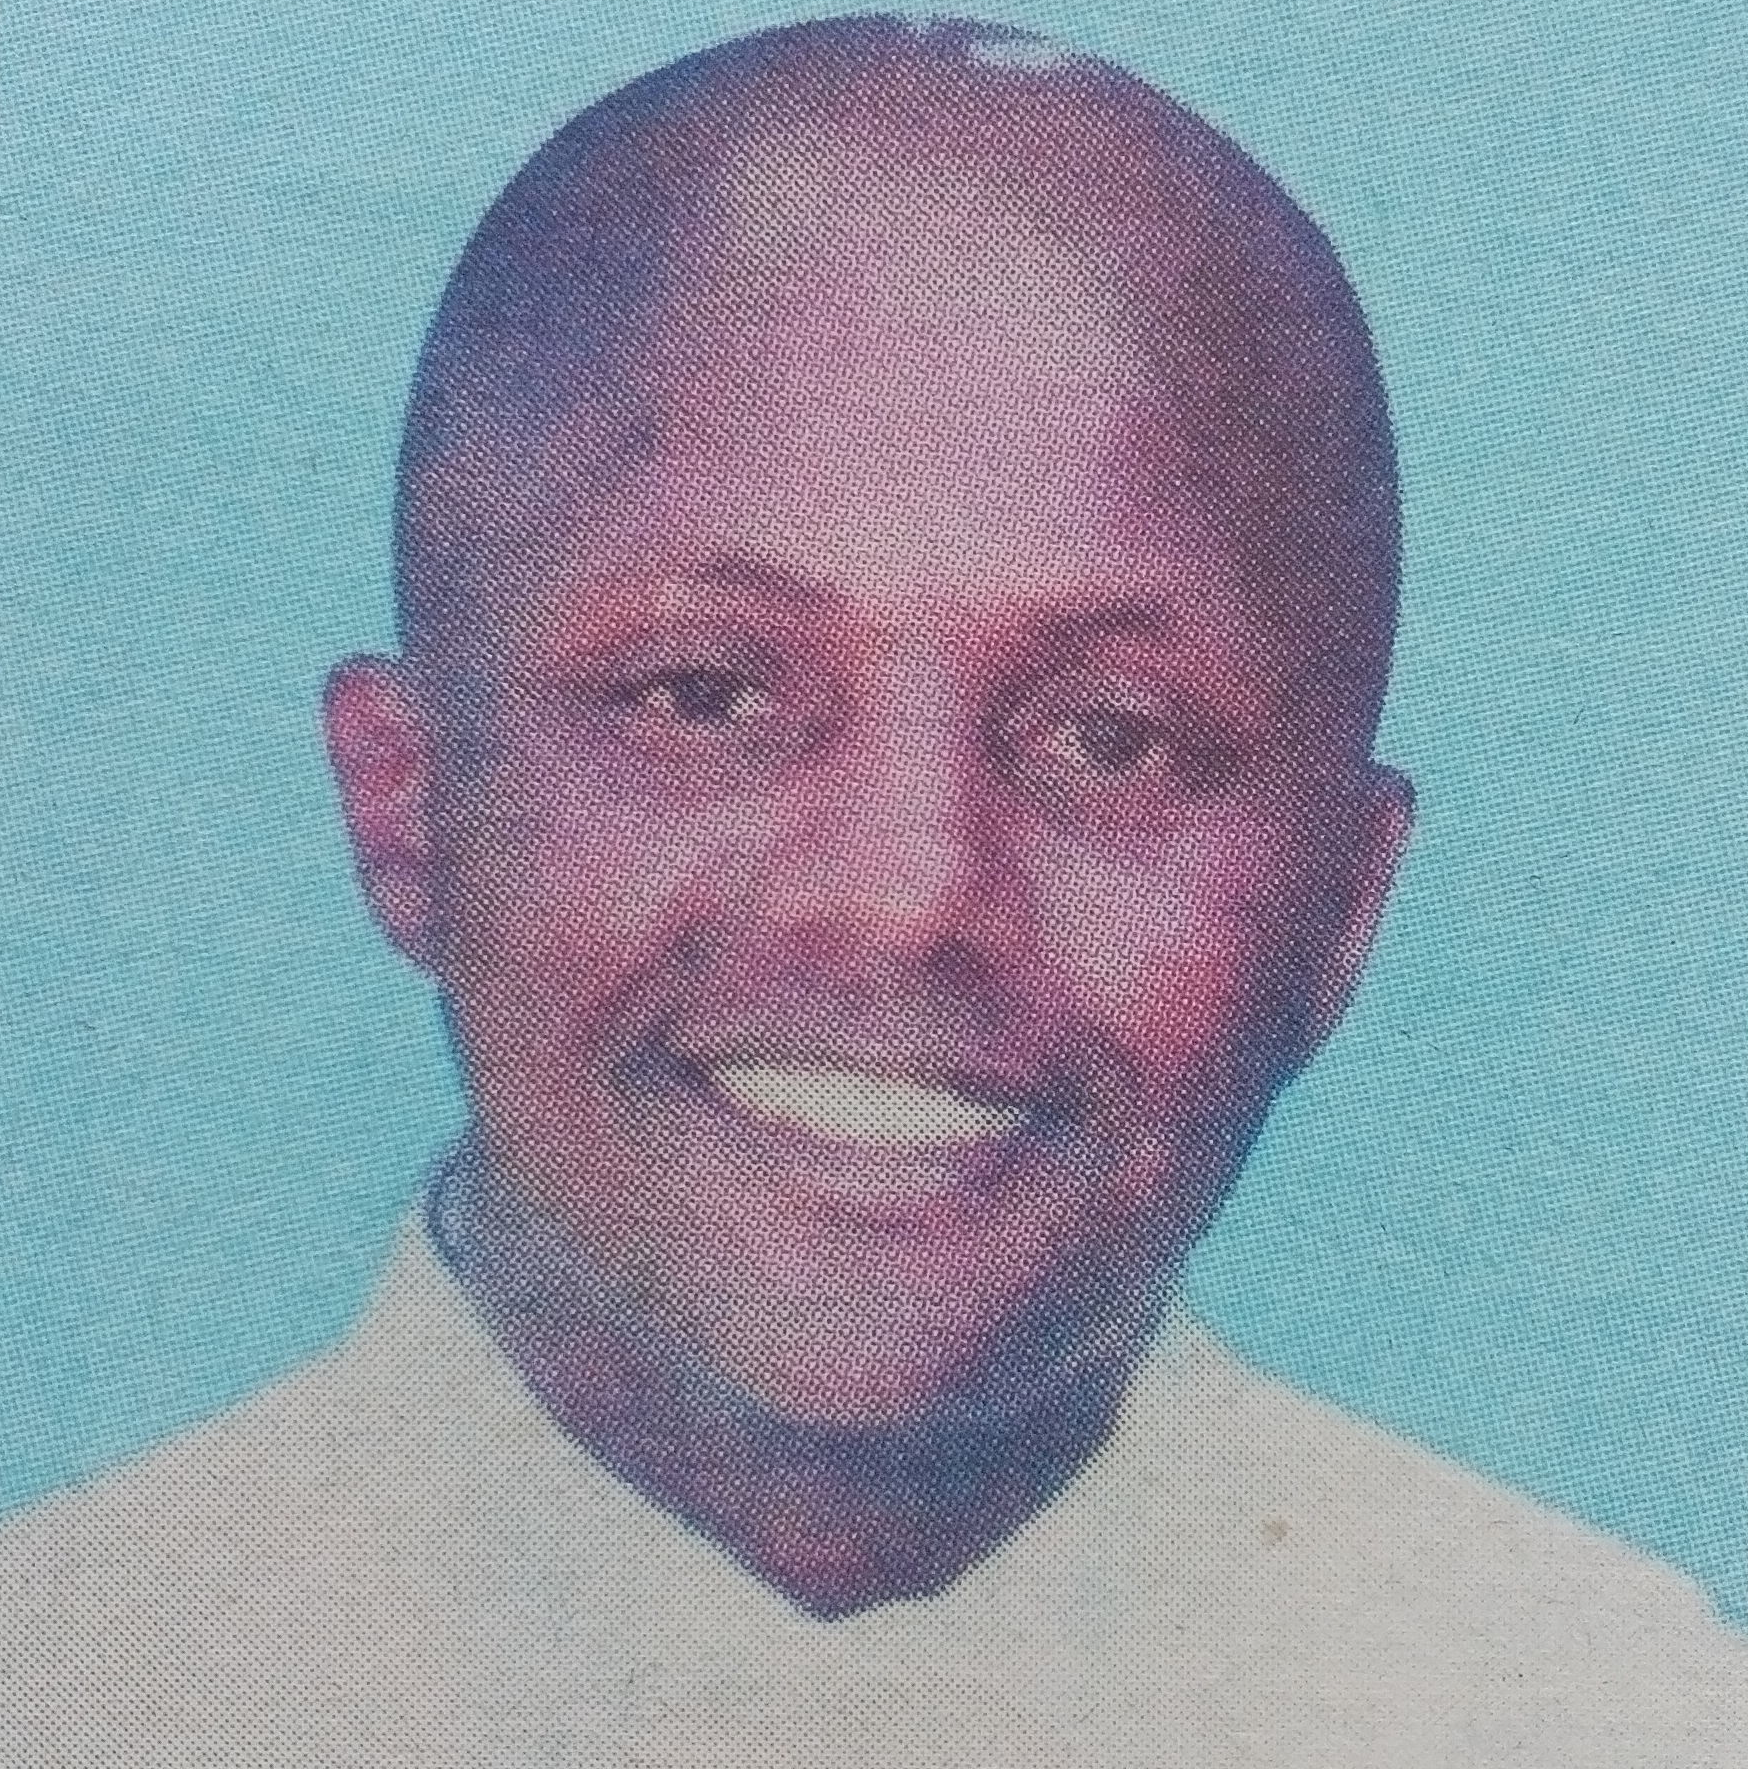 Obituary Image of Anthony Ndung'u Ndonga